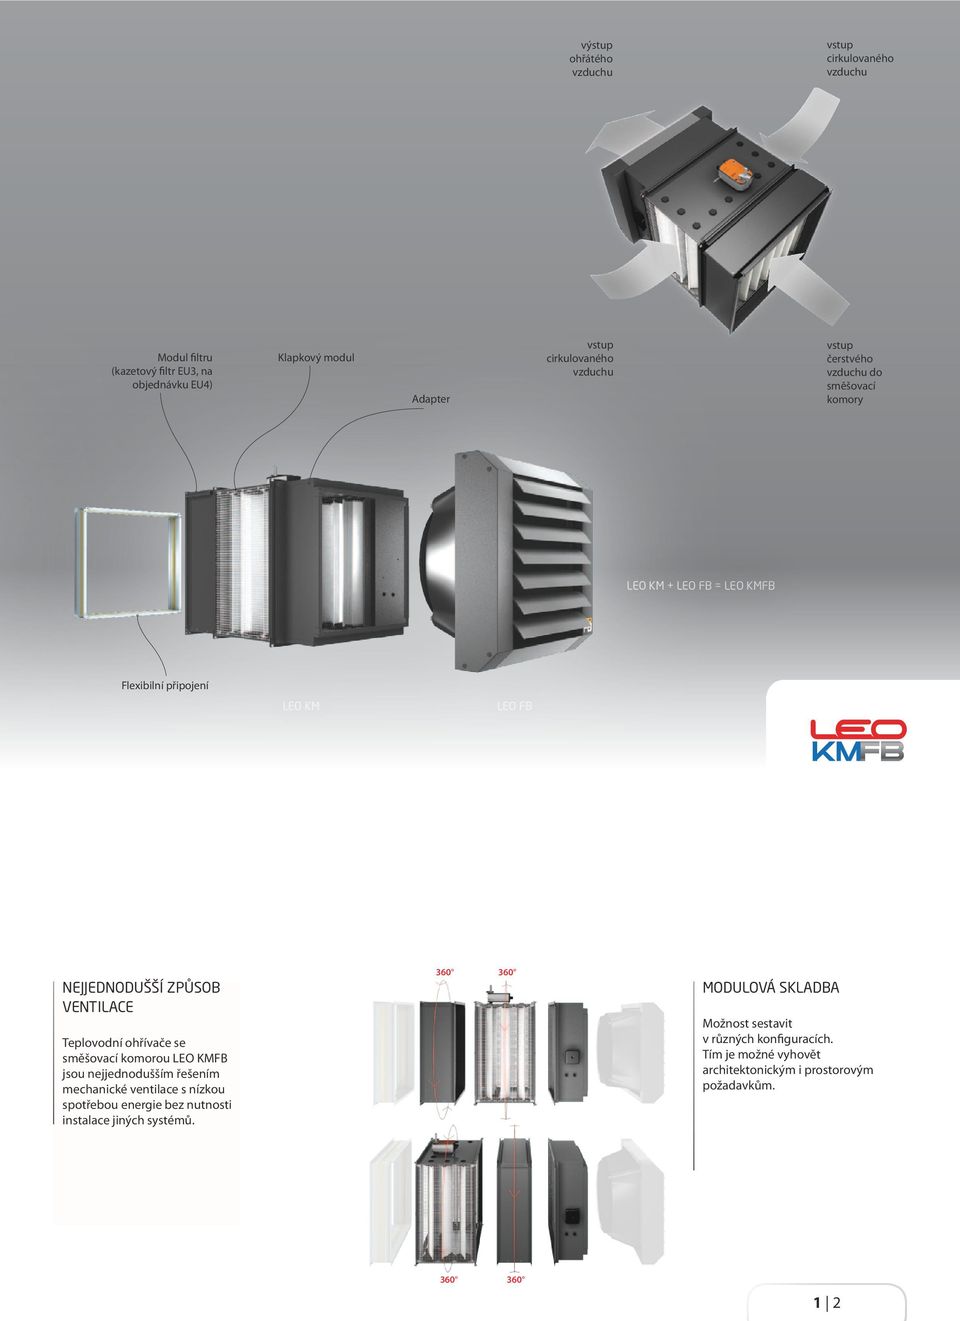 Teplovodní ohřívače se směšovací komorou LEO KMFB jsou nejjednodušším řešením mechanické ventilace s nízkou spotřebou energie bez nutnosti instalace